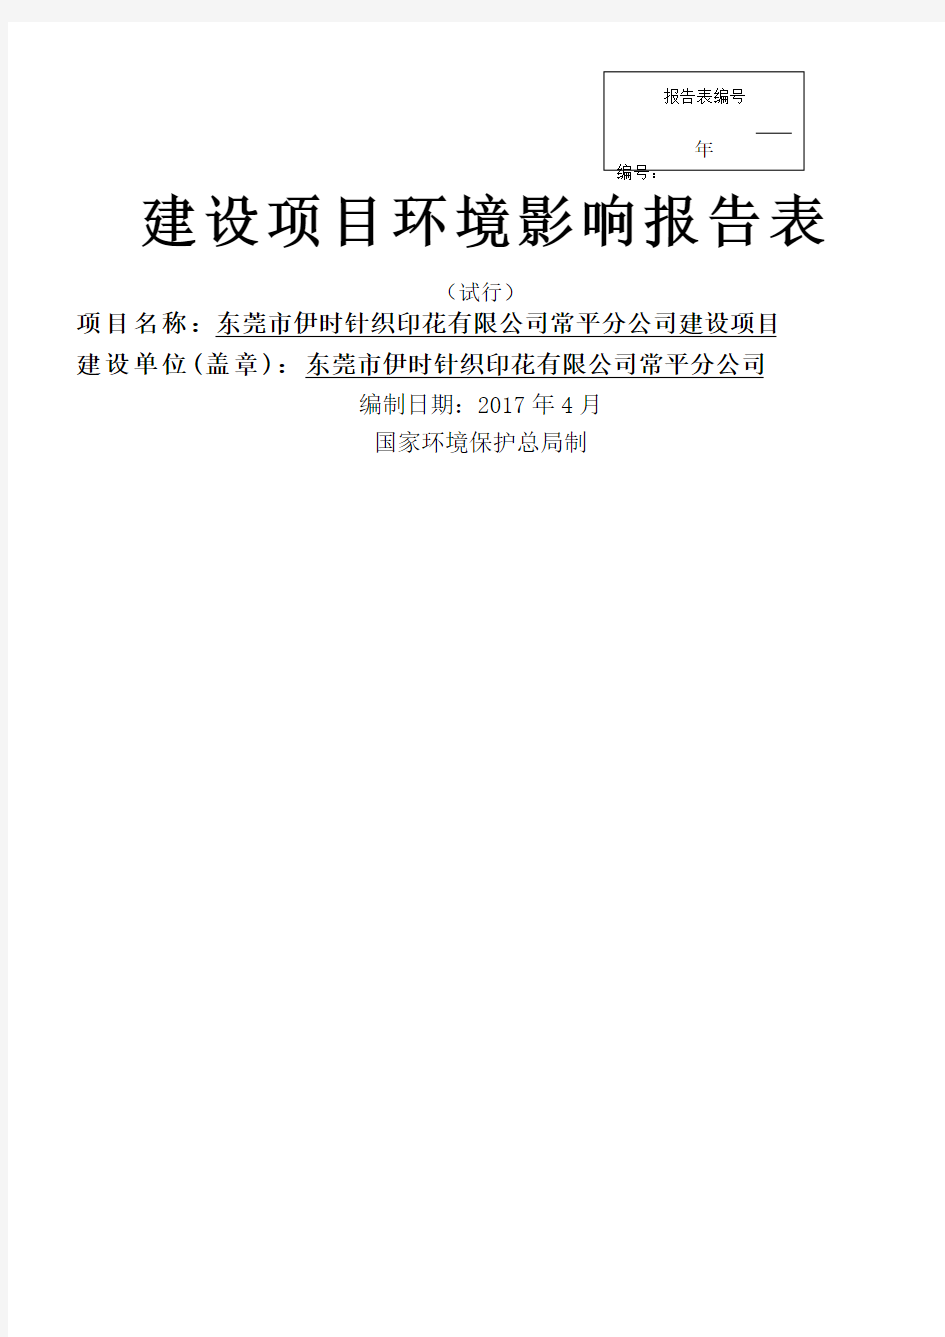 东莞市伊时针织印花 公司常平分公司环境影响报告表